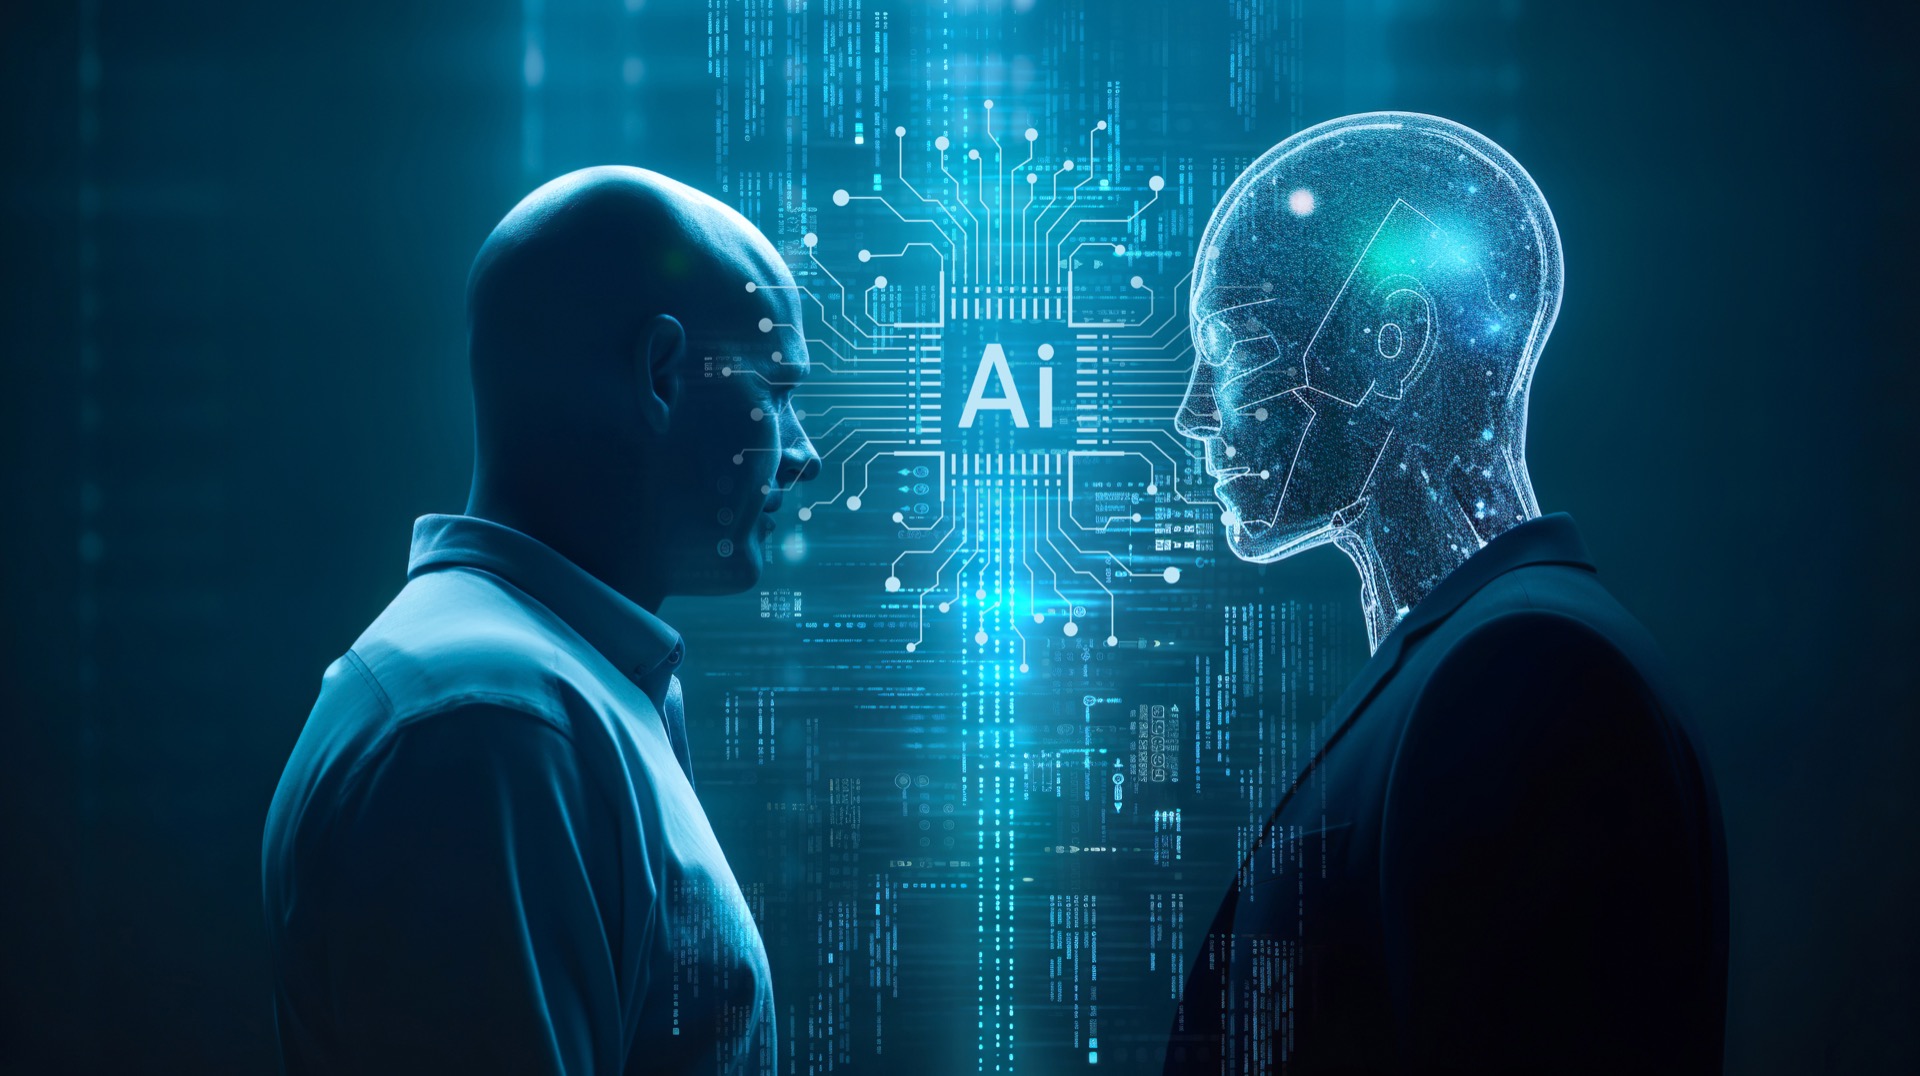 Un être humain et une IA se font face sur fond de visuels technologiques. © Limitless Visions, Adobe Stock   